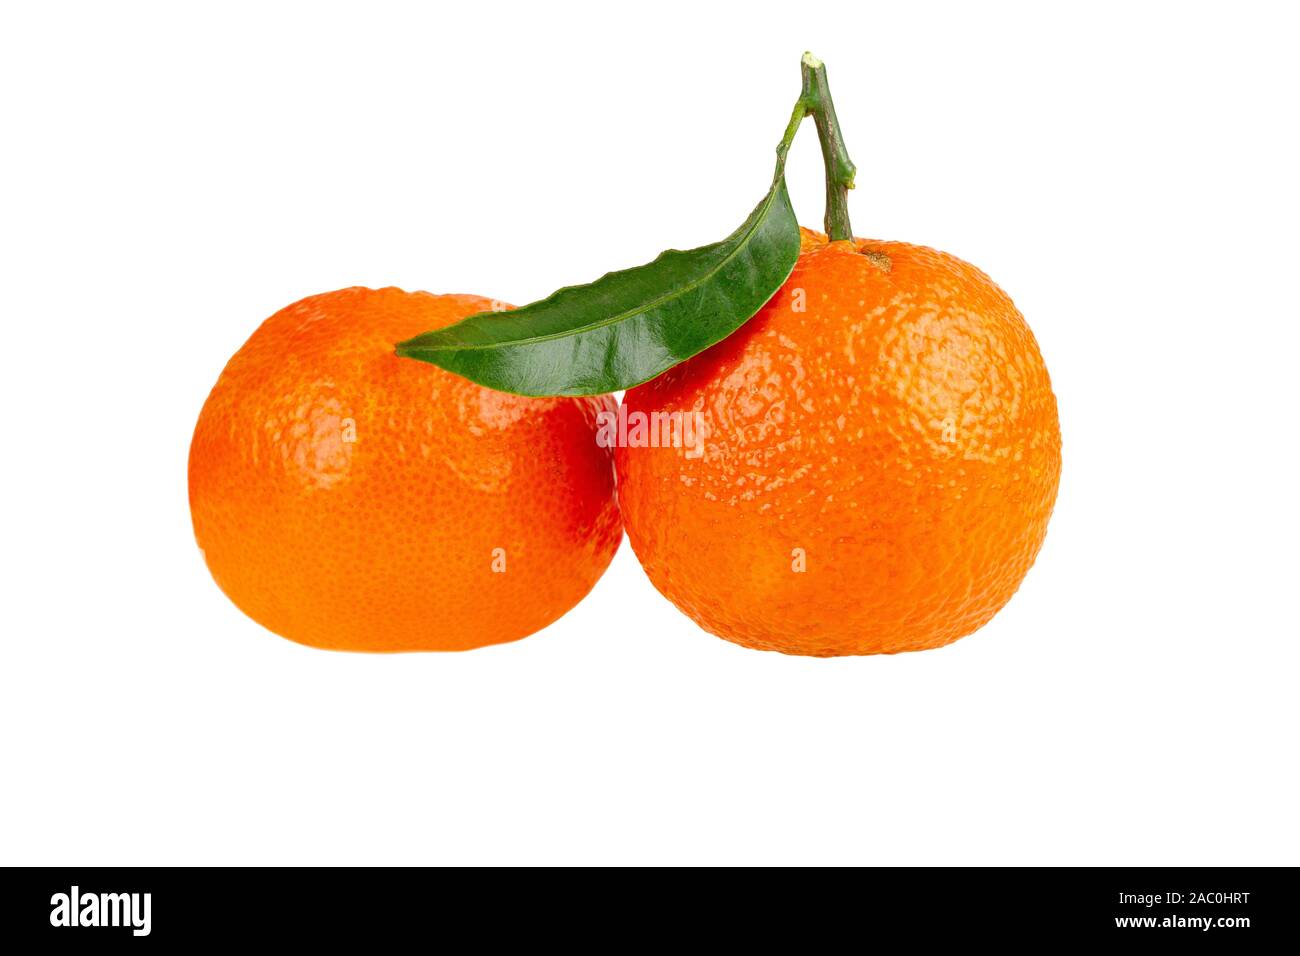 two tangerine mandarin orange fruit isolated on white Stock Photo